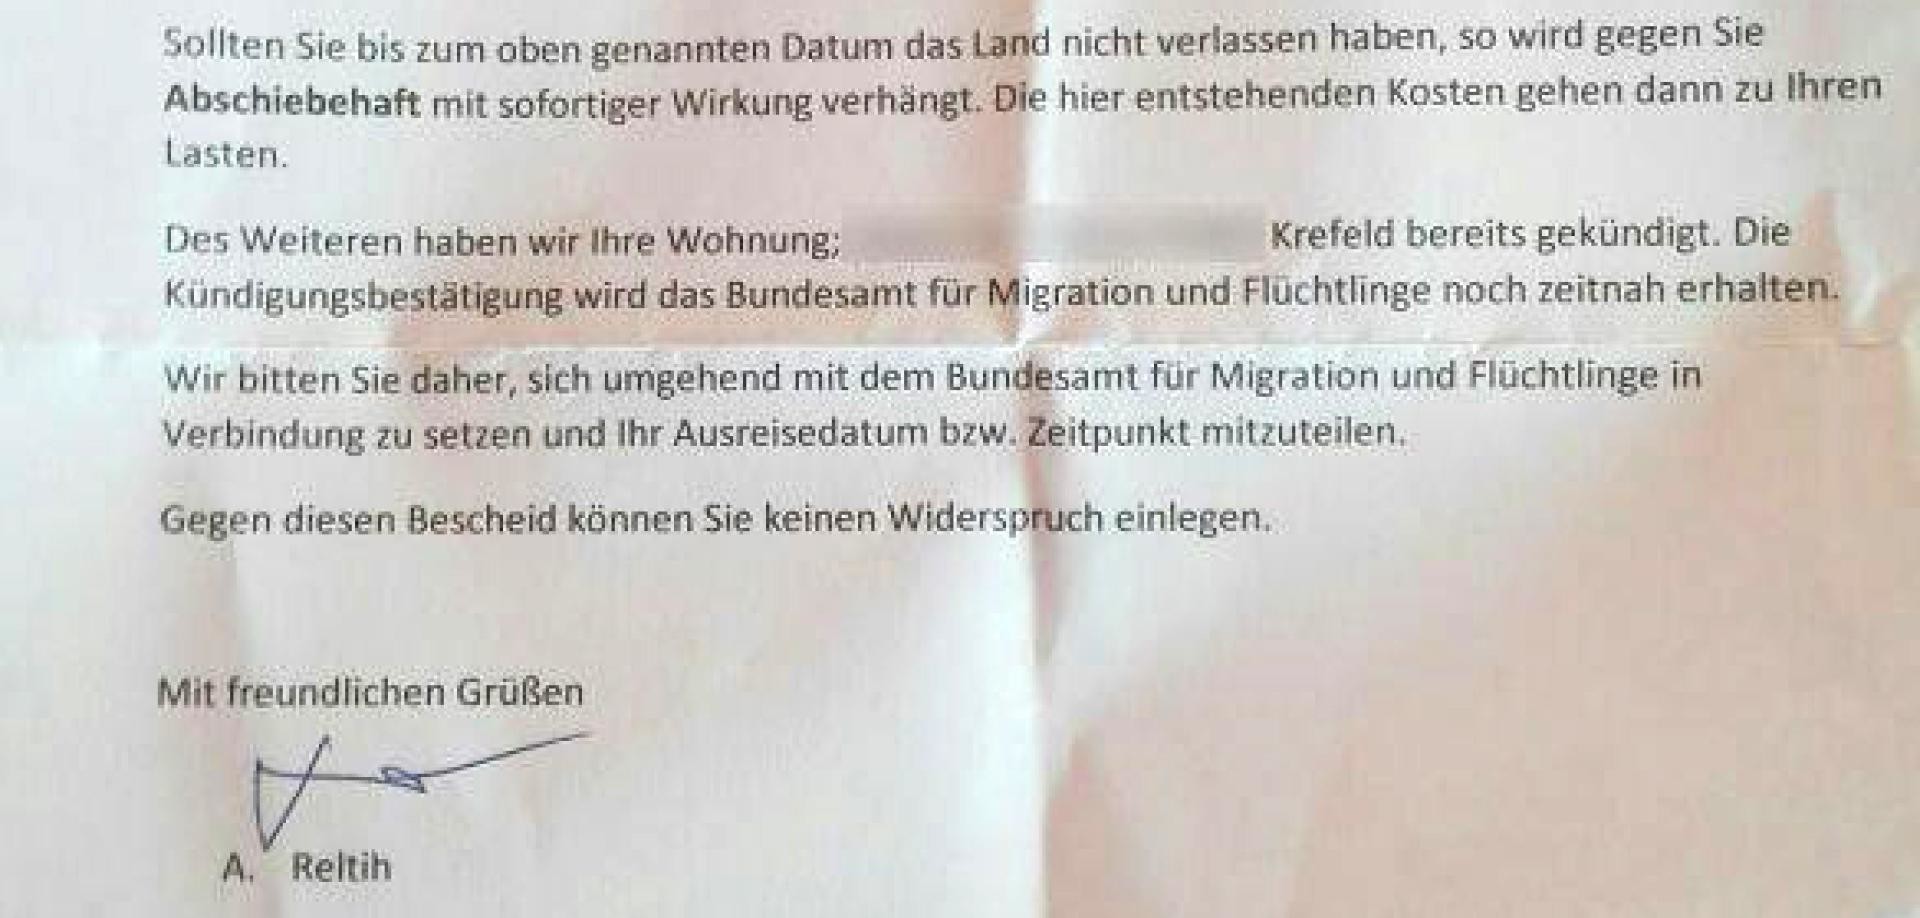 Присланное по почте фальшивое письмо с отказом в предоставлении убежища. Фото: © Welt